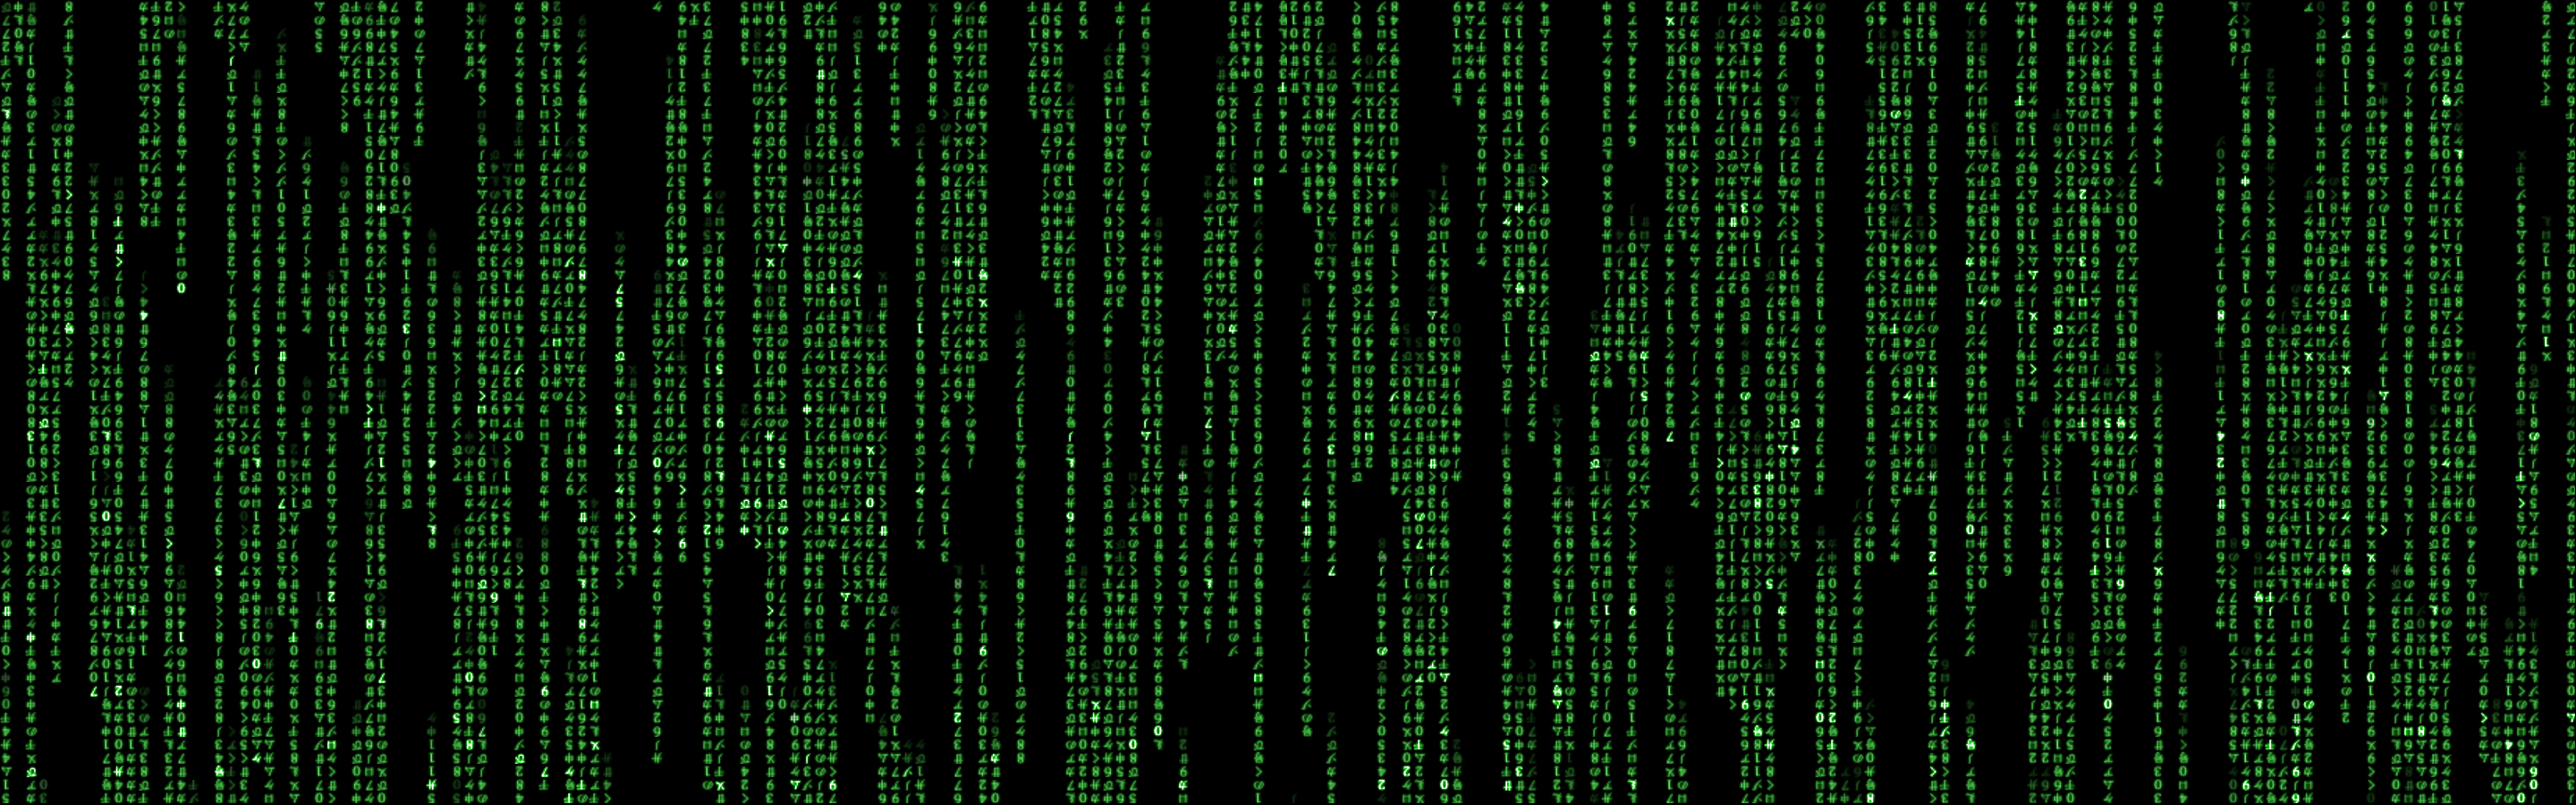 Movies Matrix Wallpaper Code Hollywood